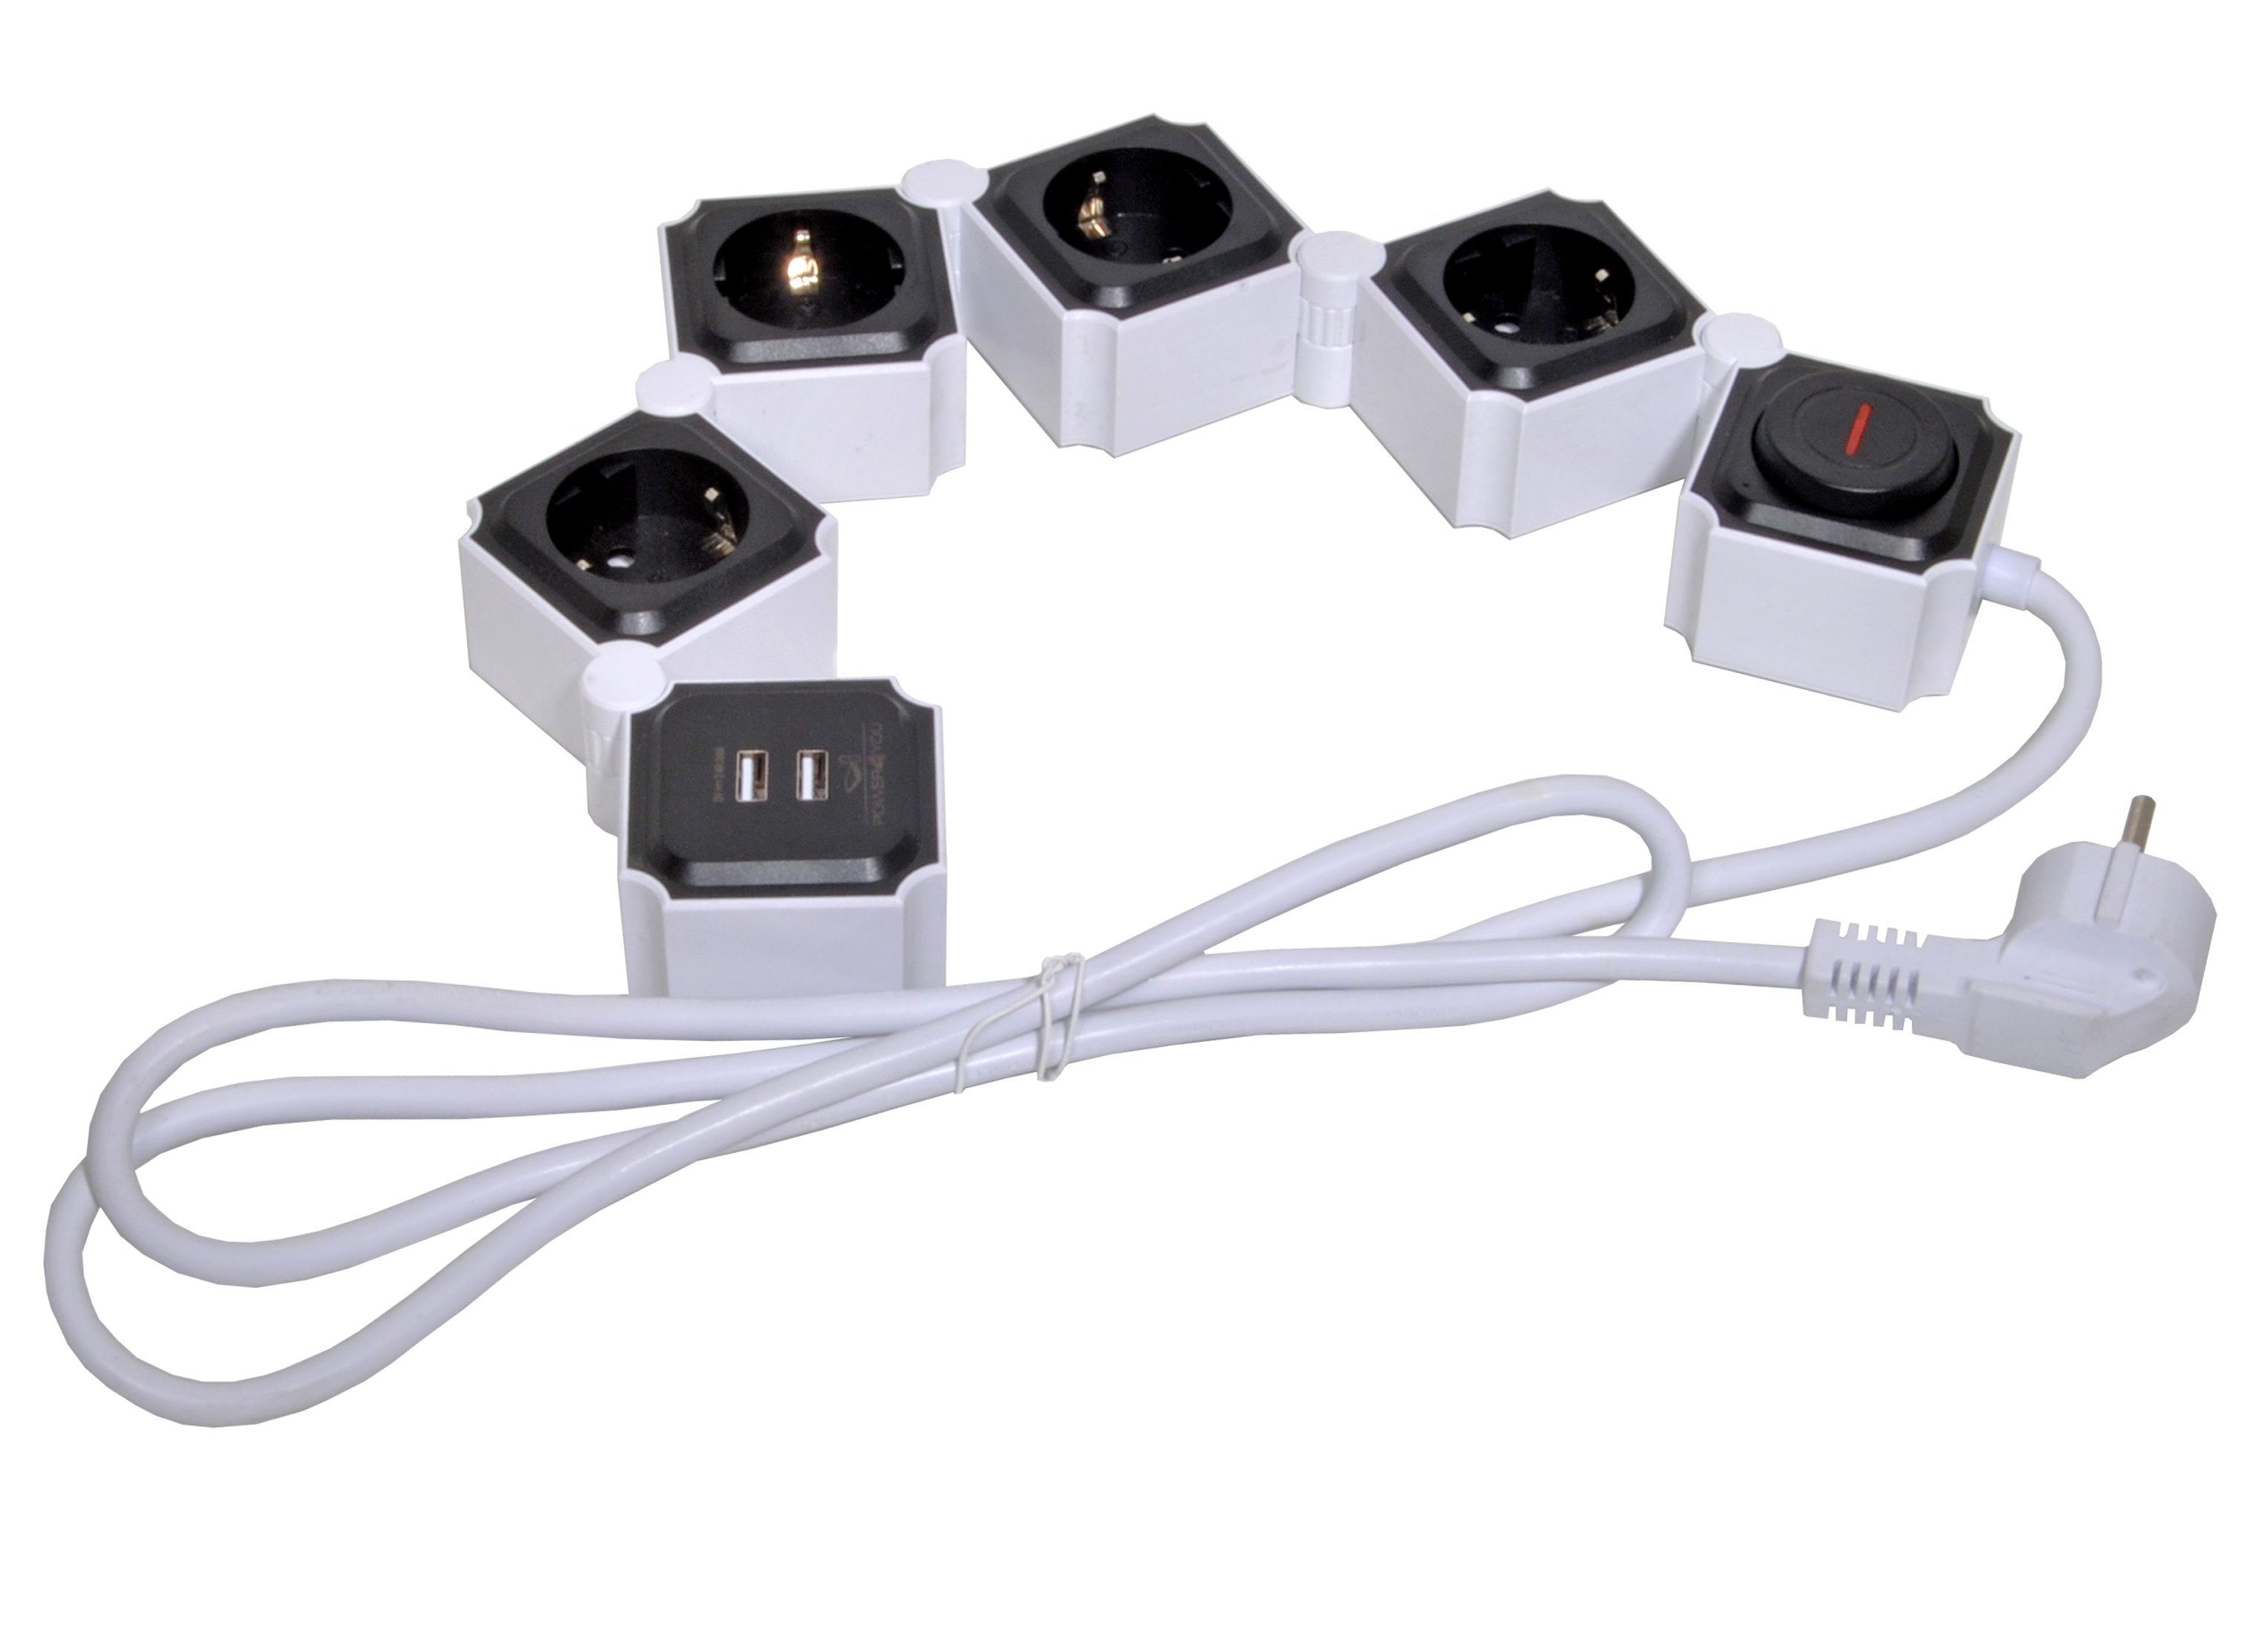 Schwaiger 4-fach Steckdosenleiste 2 x USB (4,2A) Schalter Mehrfachstecker Mehrfachsteckdose (Ein- / Ausschalter, USB-Anschlüsse, Schalterbeleuchtung, separate Ein- / Ausschalter, Flexible Einsatz, 1,5M kabel), inkl. 2 x USB 12w schwarz